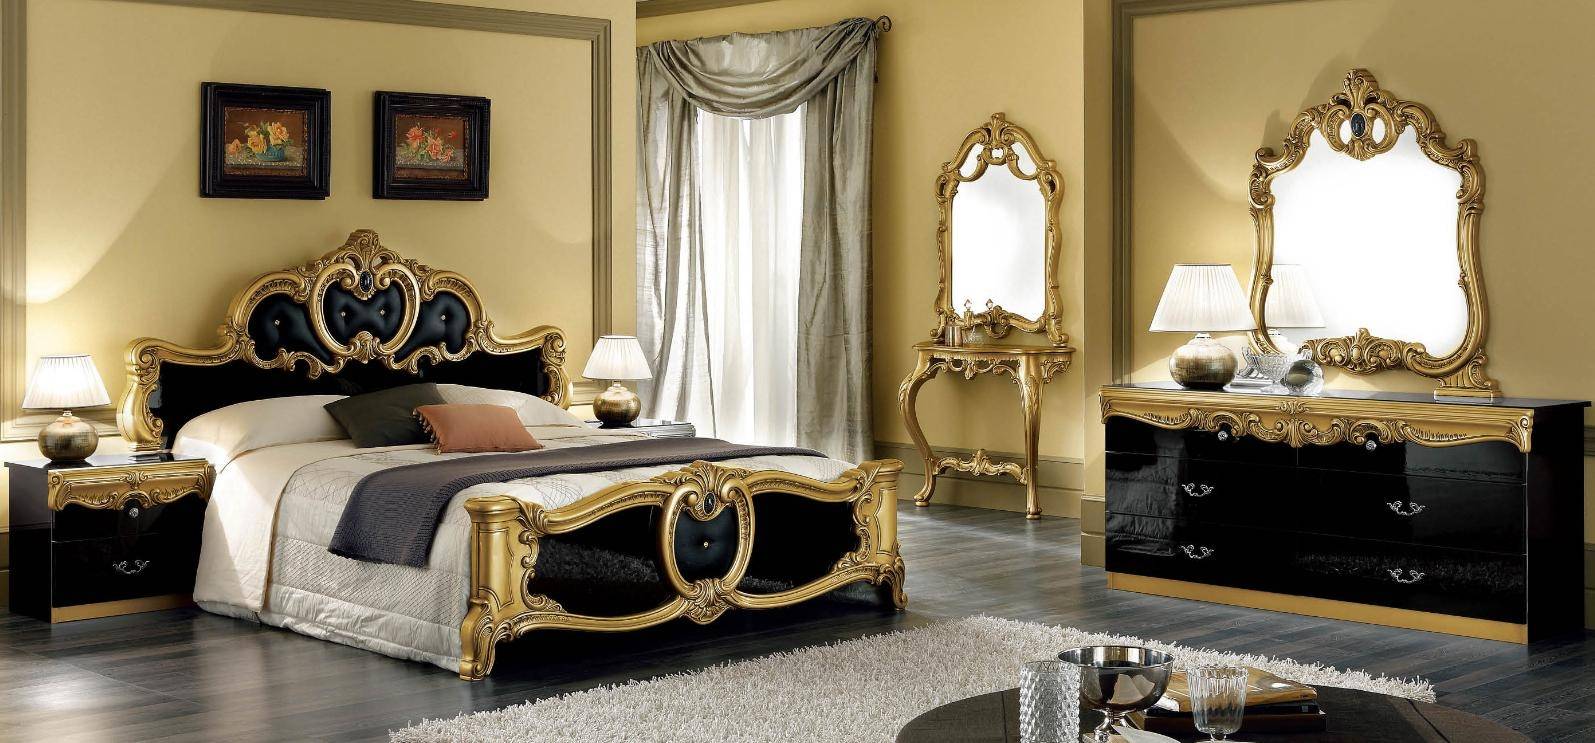 Bedroom Furniture Nightstands Barocco Black/Gold Bedroom